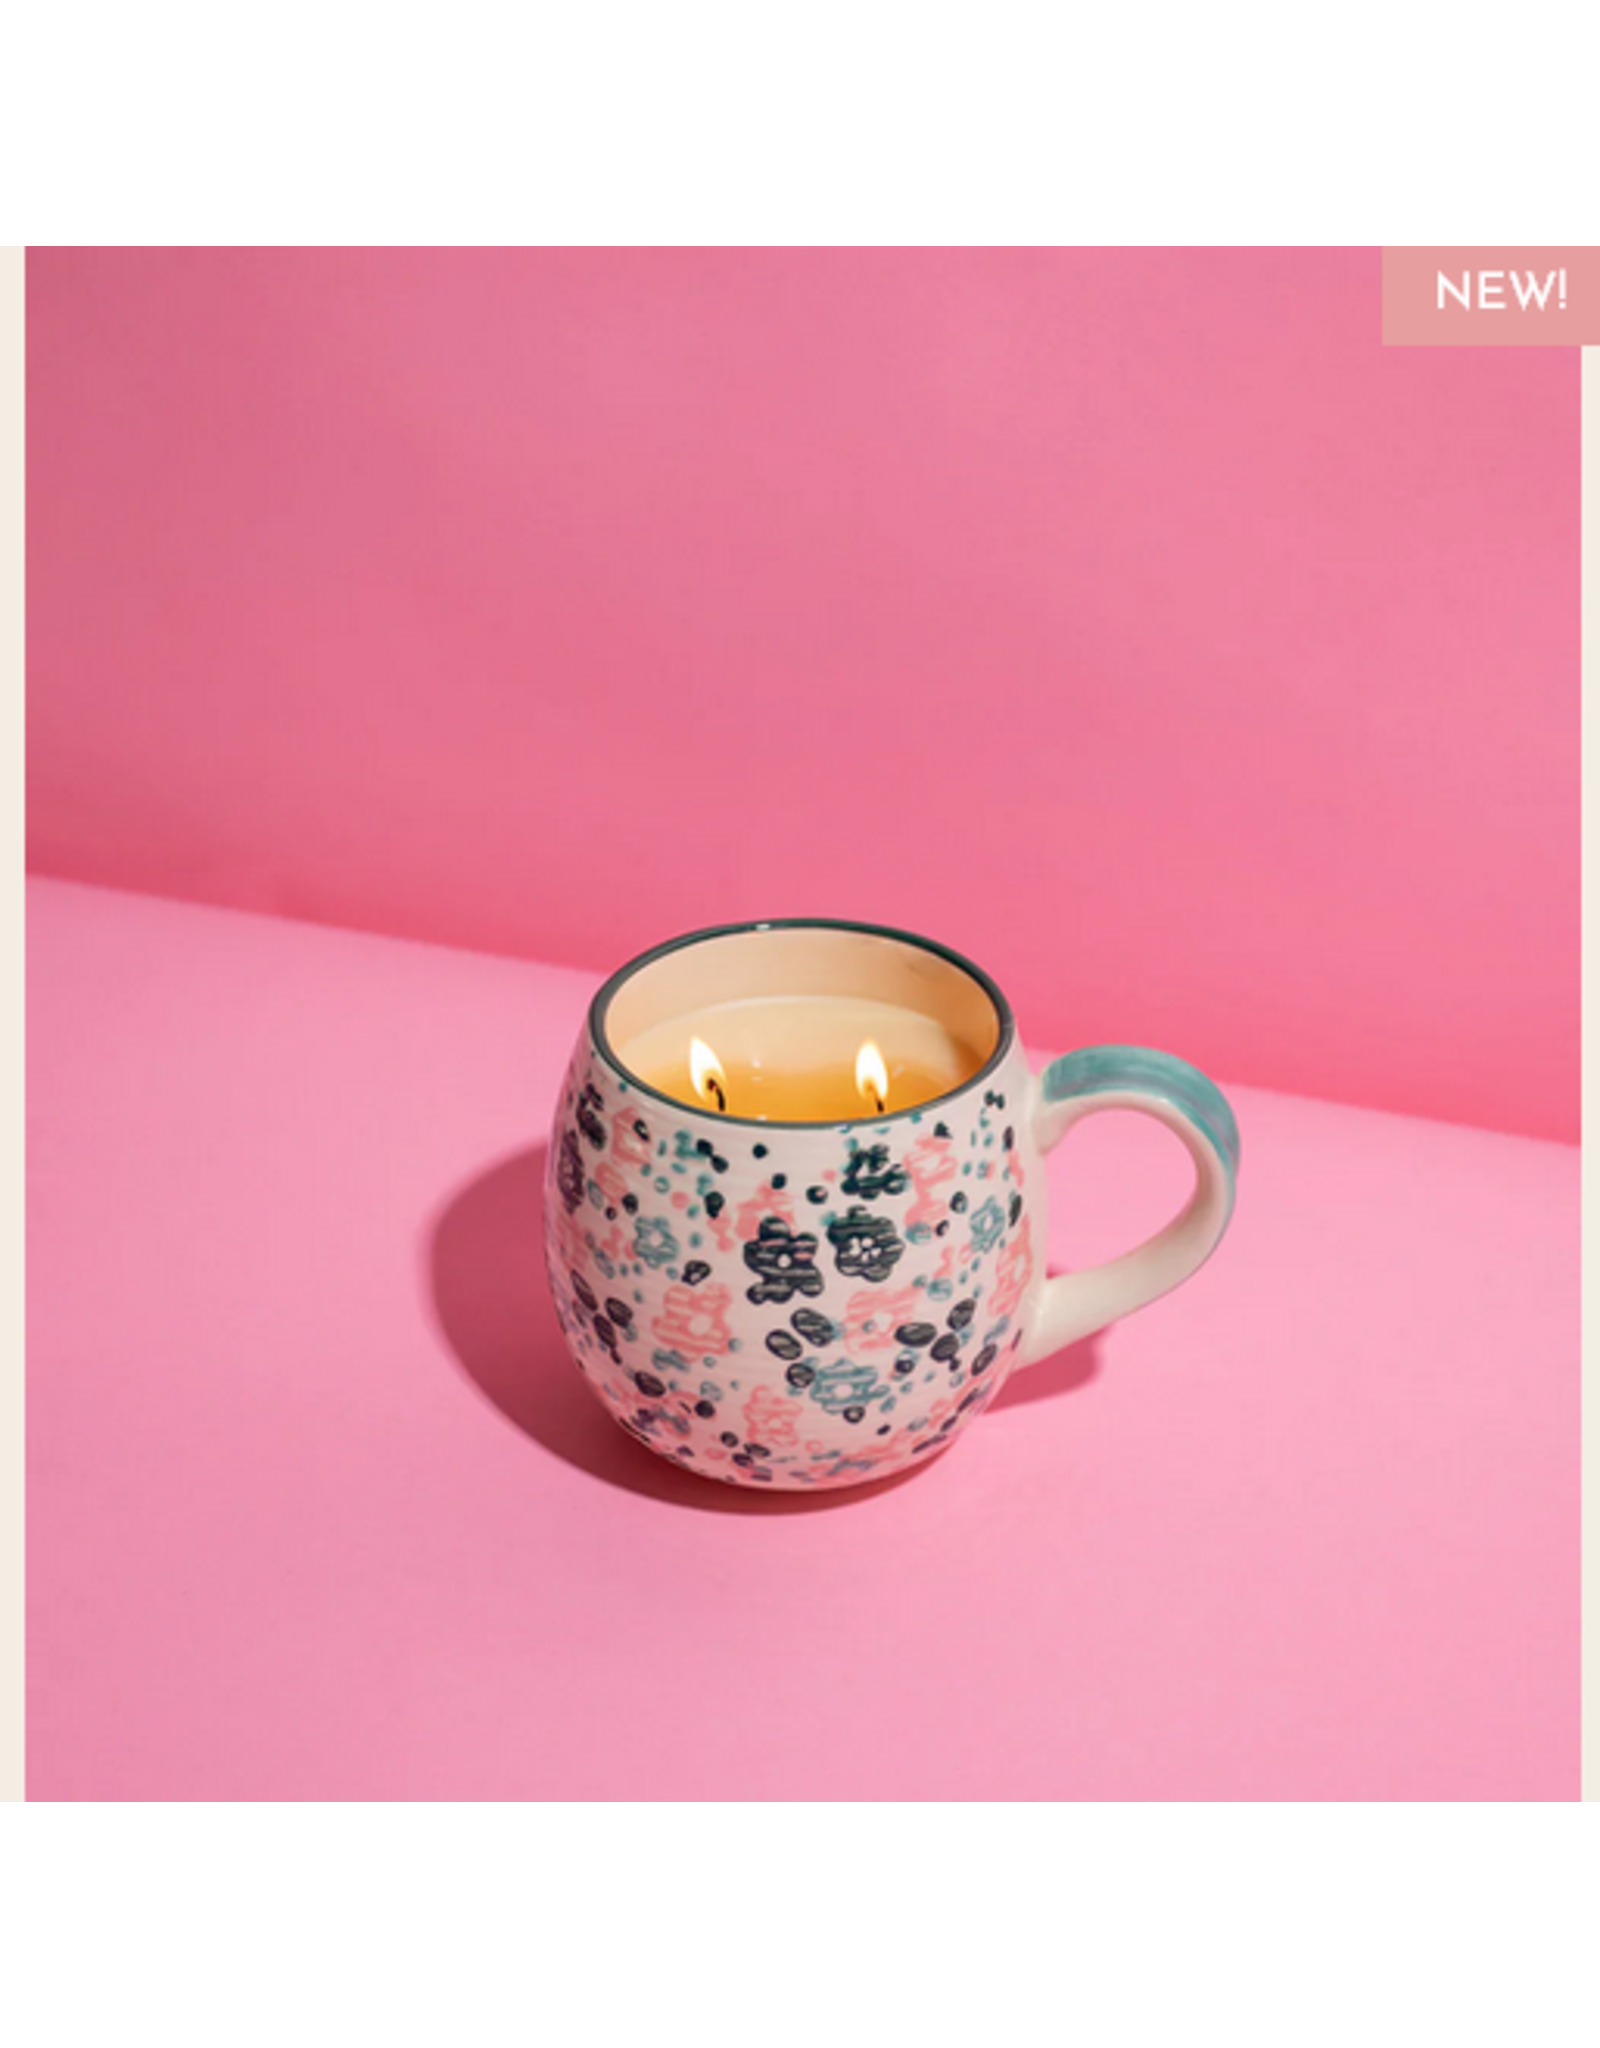 Bridgewater Sweet Grace #49 Green Pink Floral Mug Candle